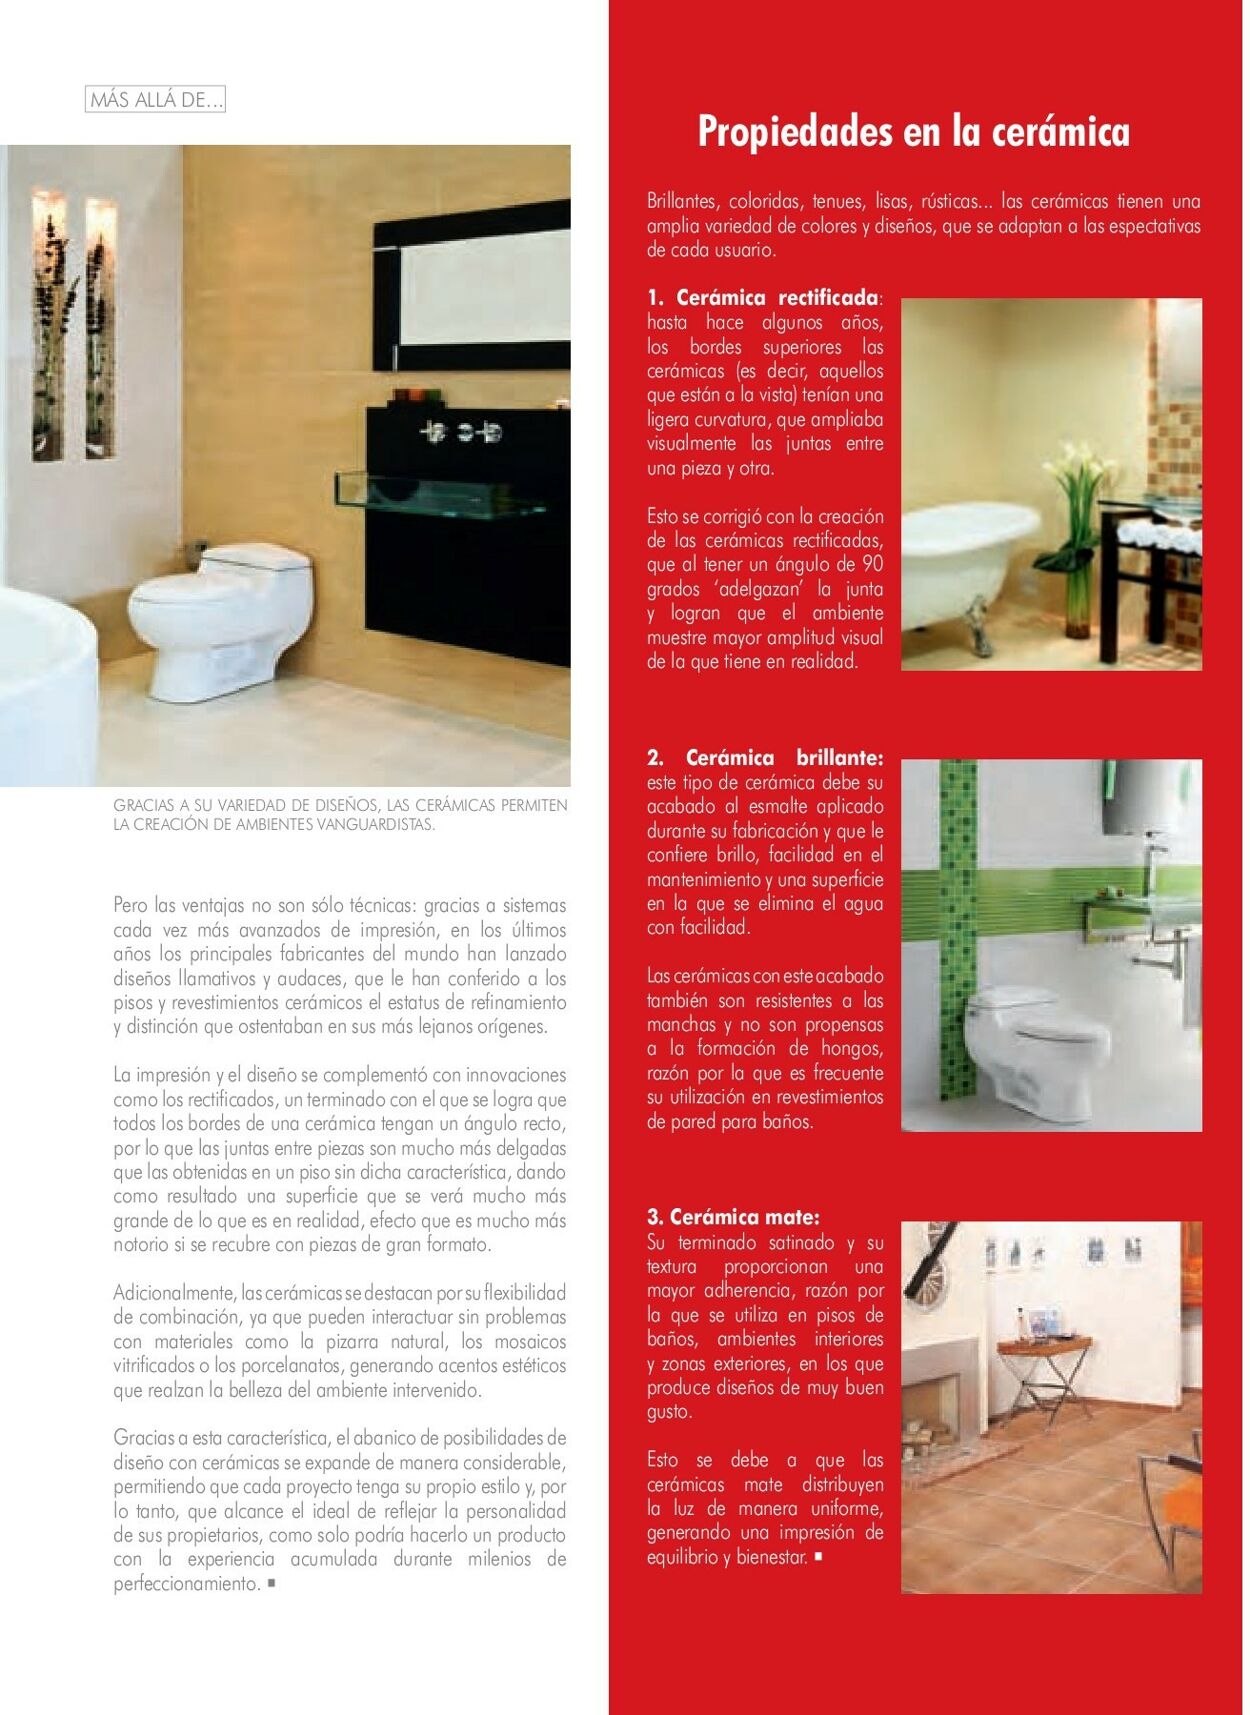 Catálogo Decorcerámica 01.01.2009 - 31.12.2009